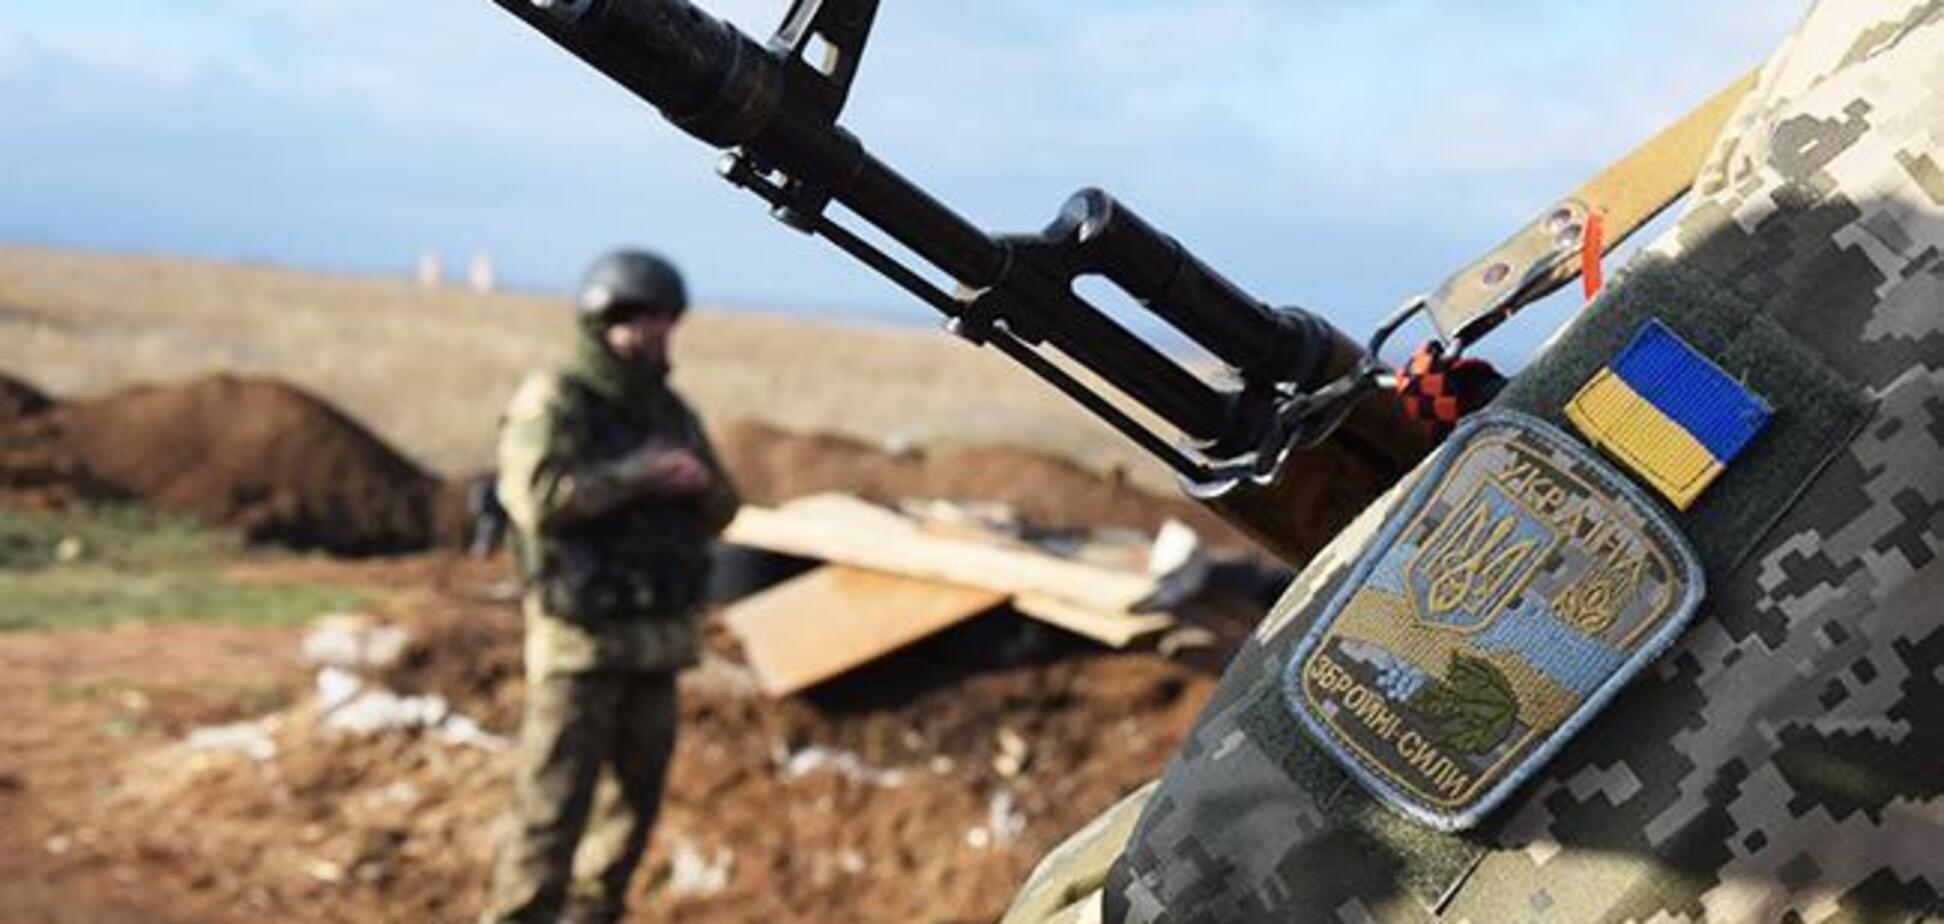 Перемир'я зірване: терористи нахабно обдурили ЗСУ на Донбасі